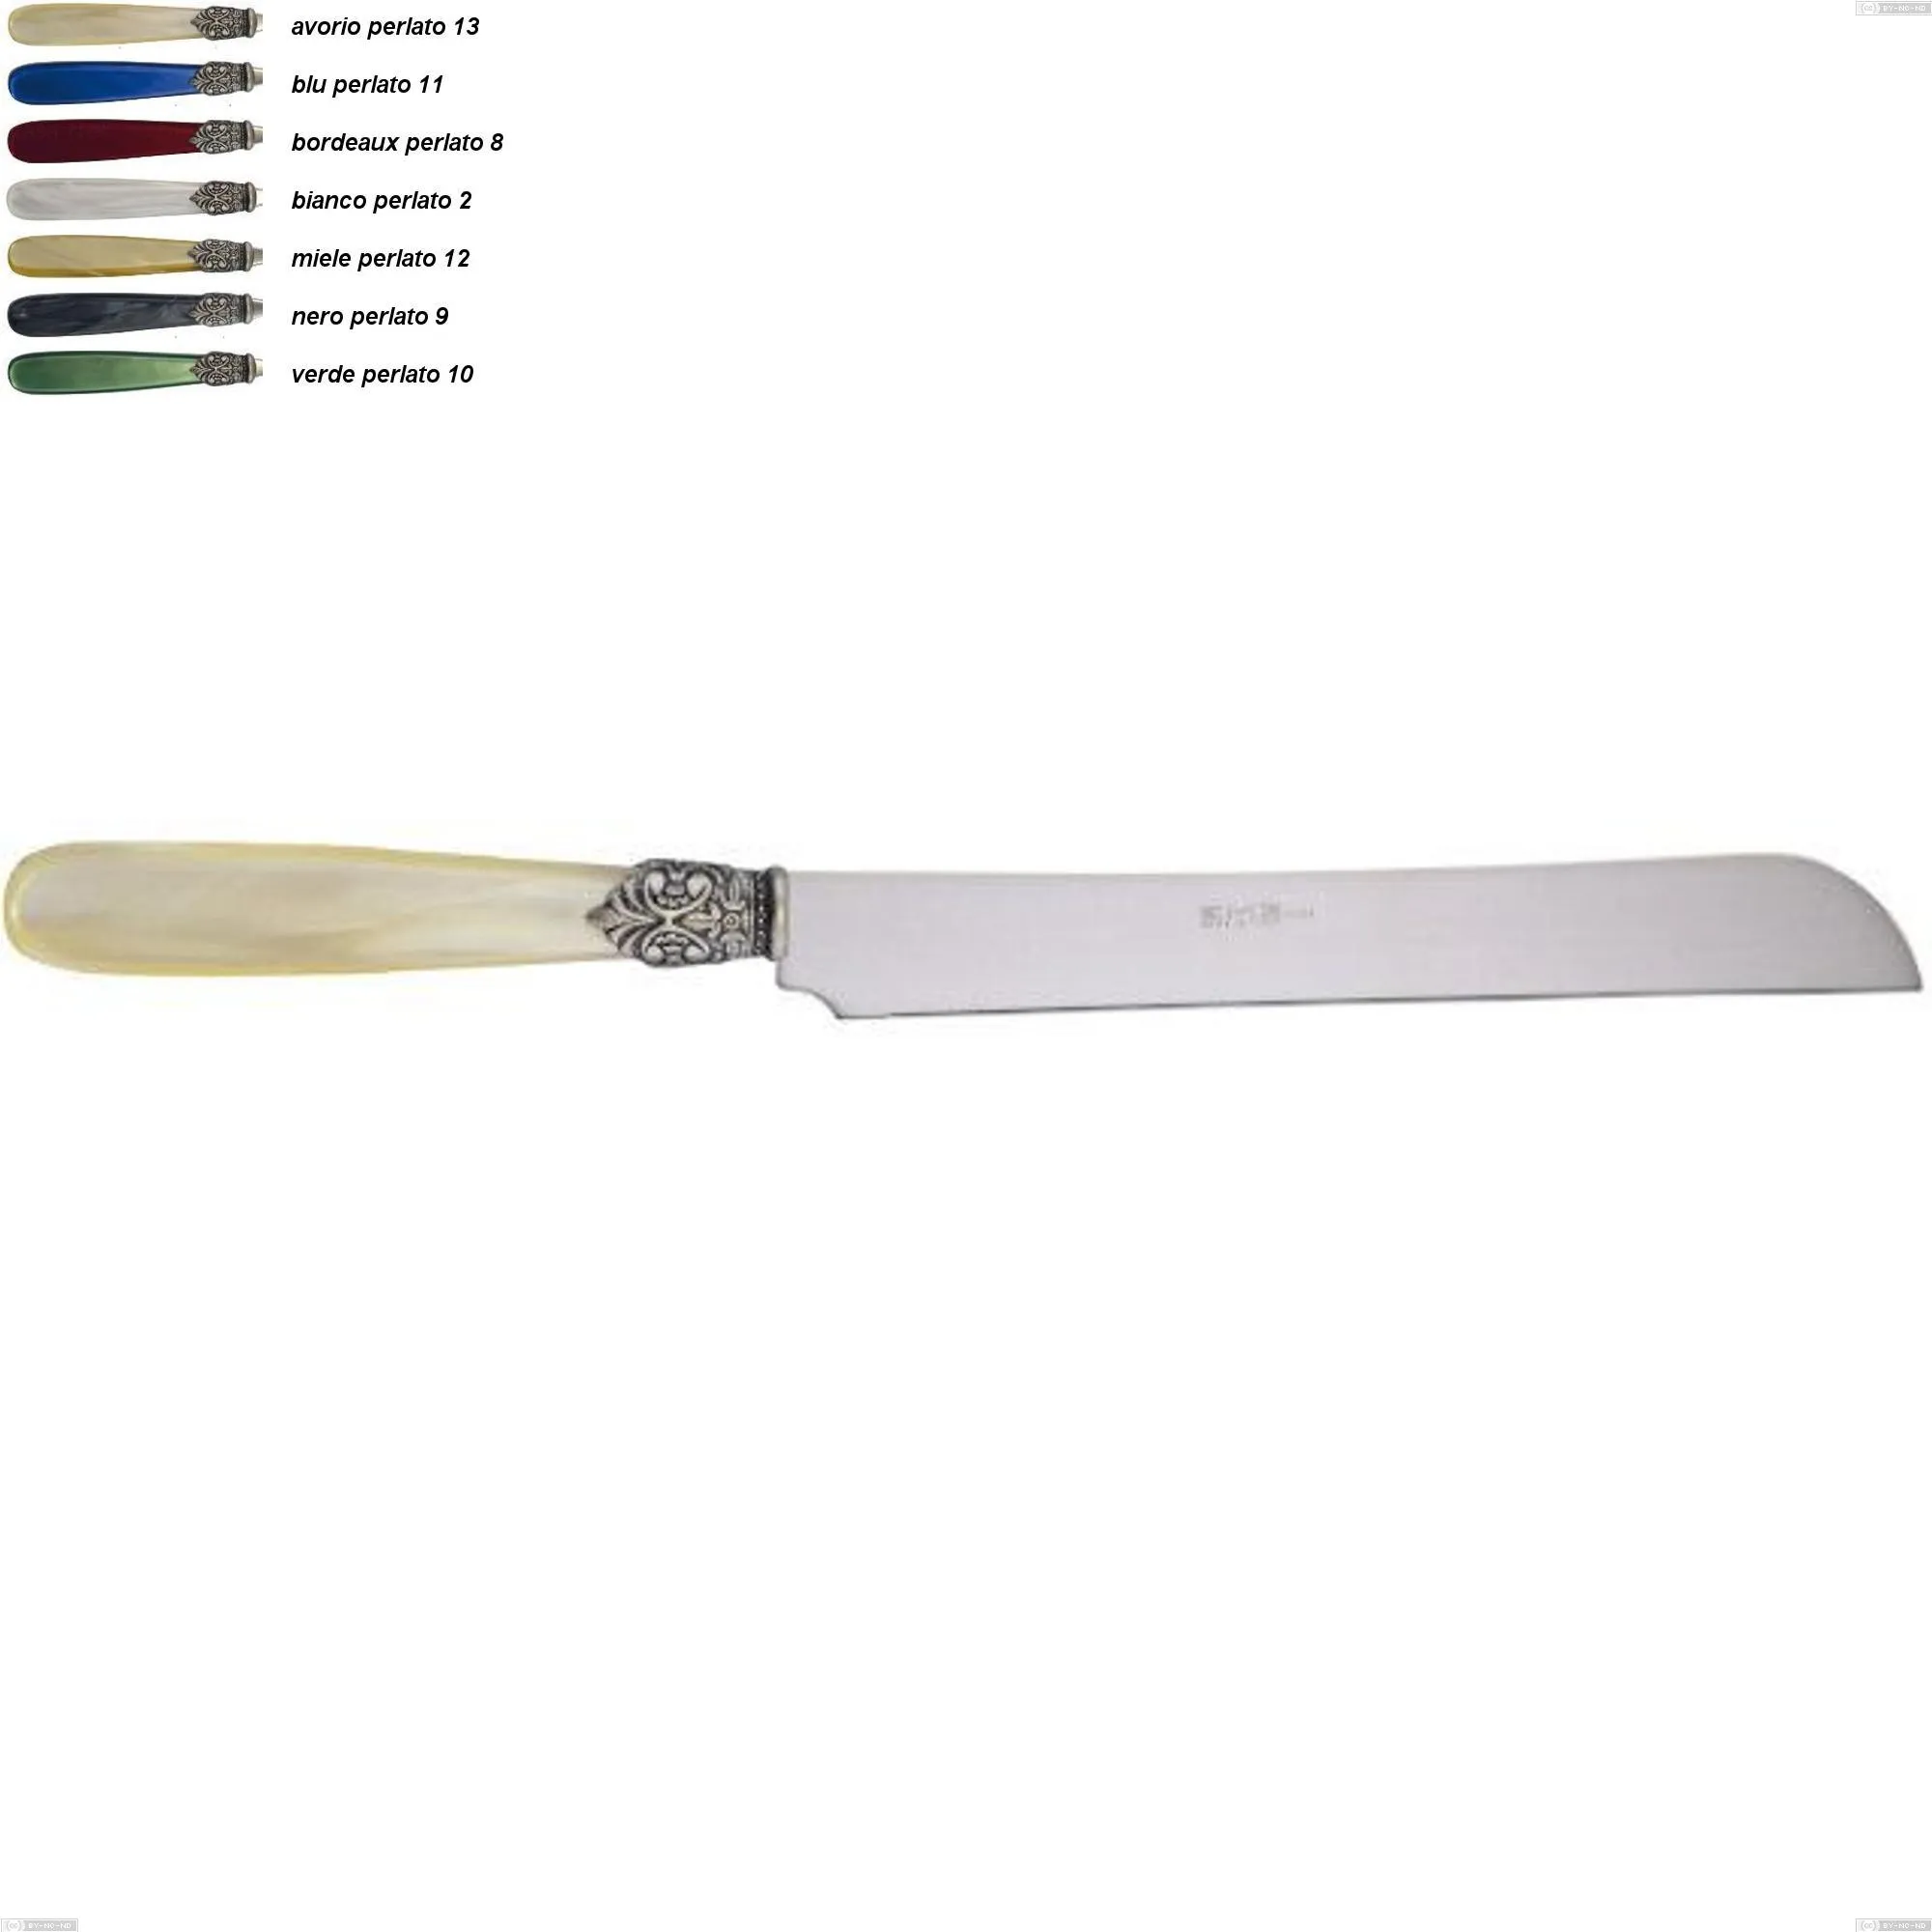 Coltello panettone georgian, Acciaio 18/10 AISI 304 Lucido manicatura acrilico perlato, lunghezza 294 mm